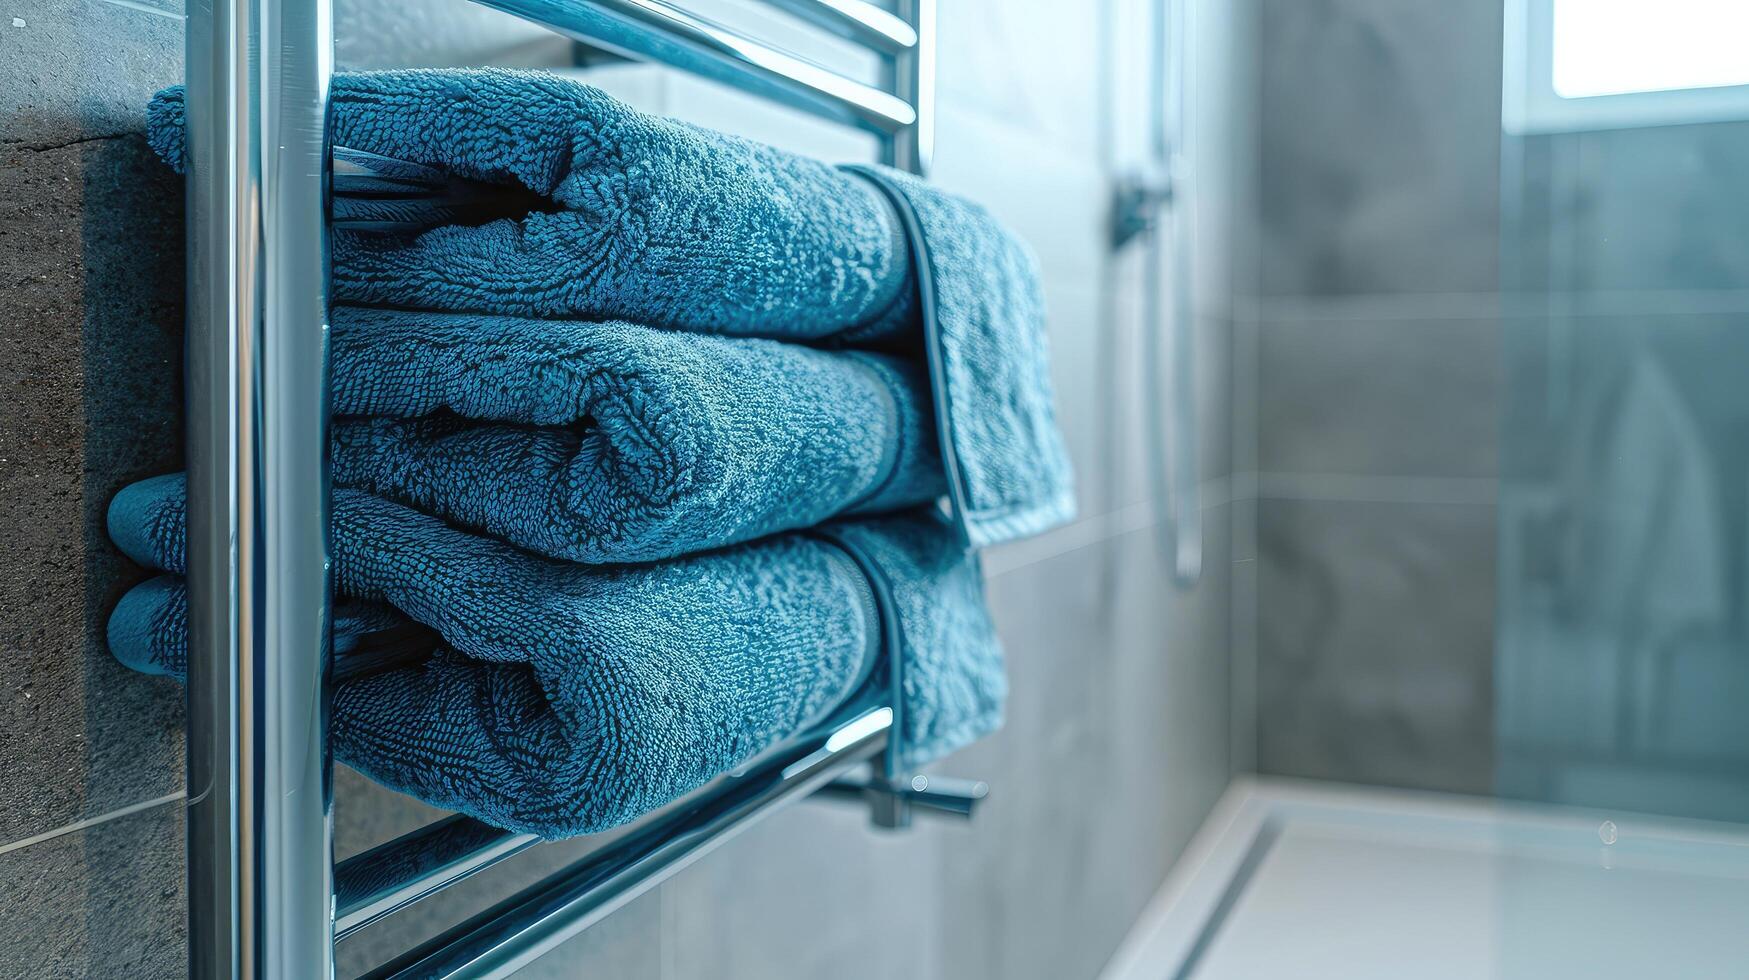 chauffé rail avec bleu les serviettes dans salle de bains avec copie espace. moderne chauffé serviette rail sur mur dans une serein salle de bains paramètre. photo